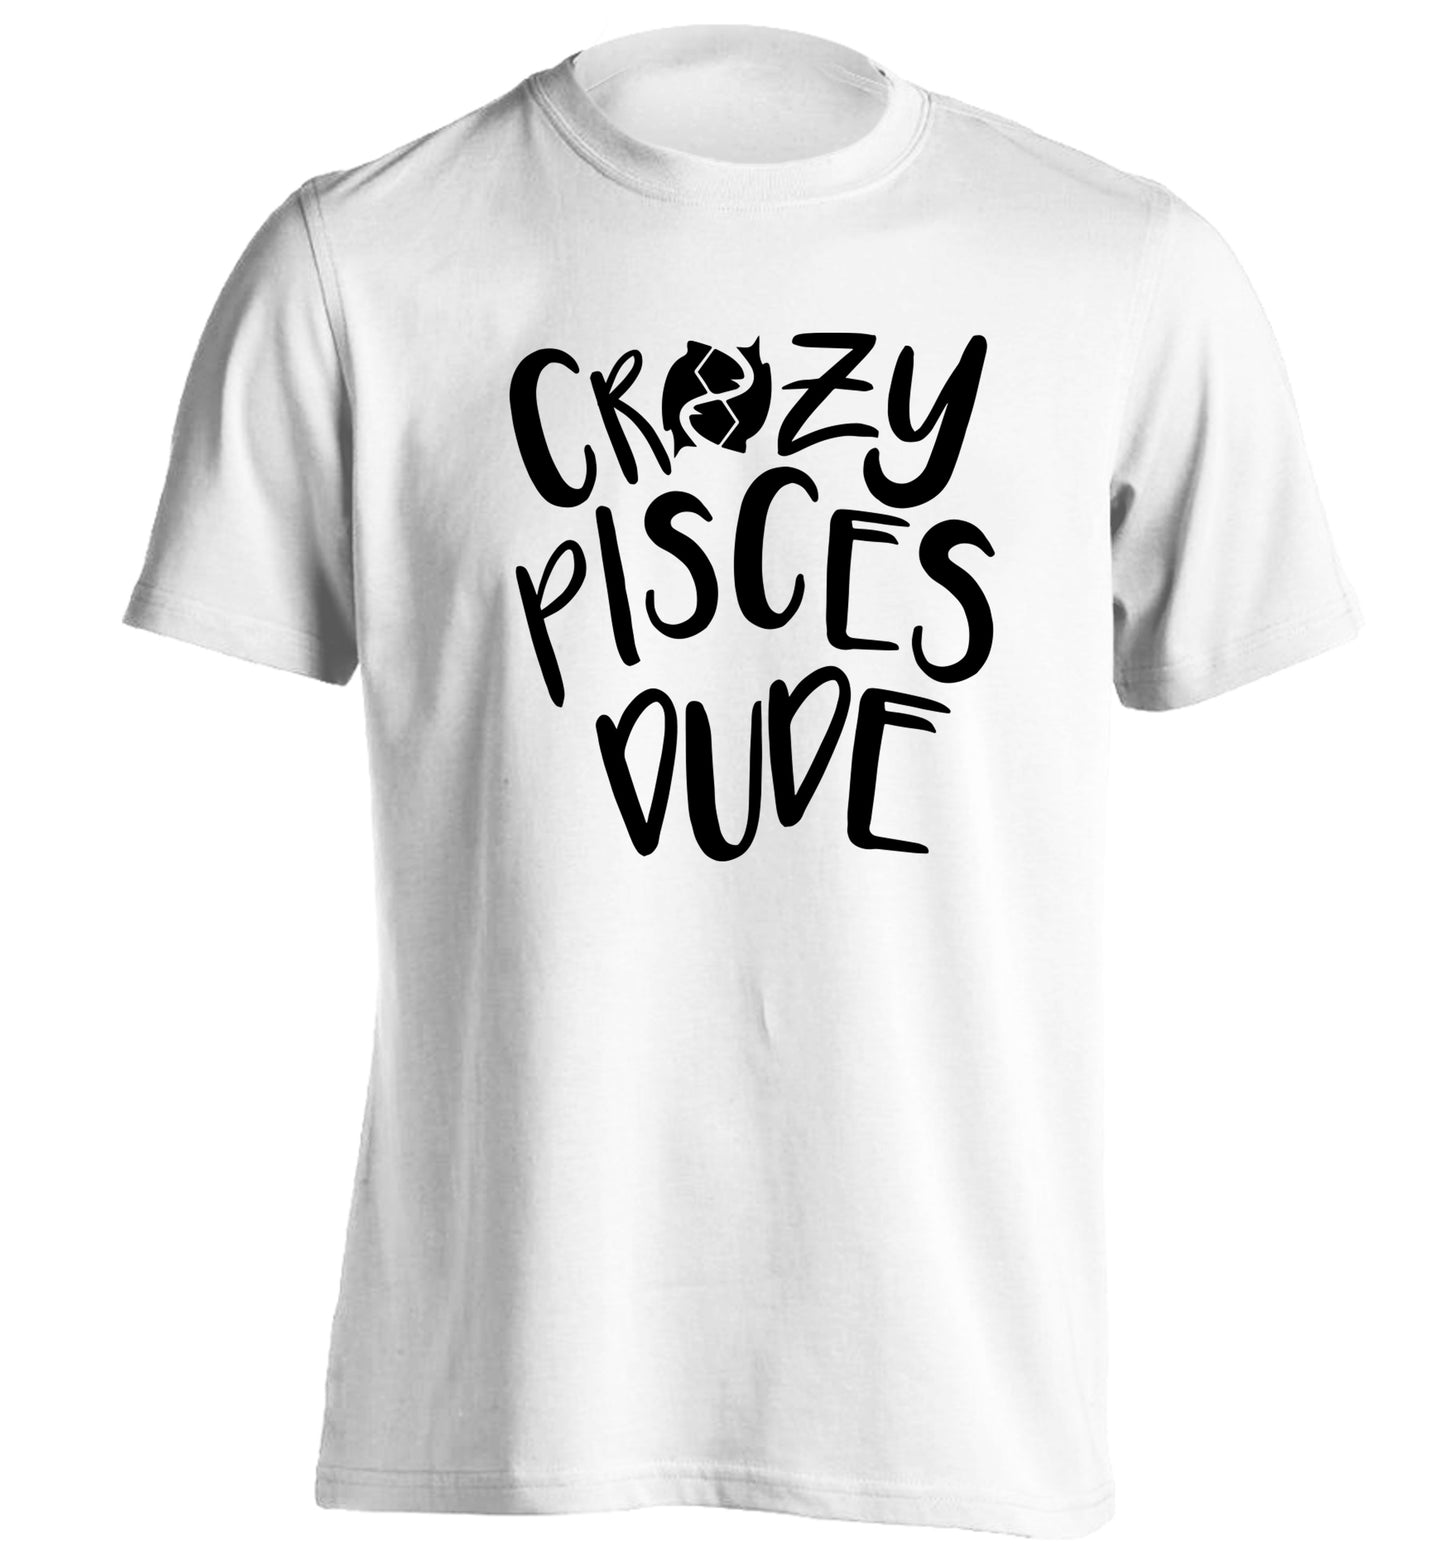 Crazy pisces dude adults unisex white Tshirt 2XL